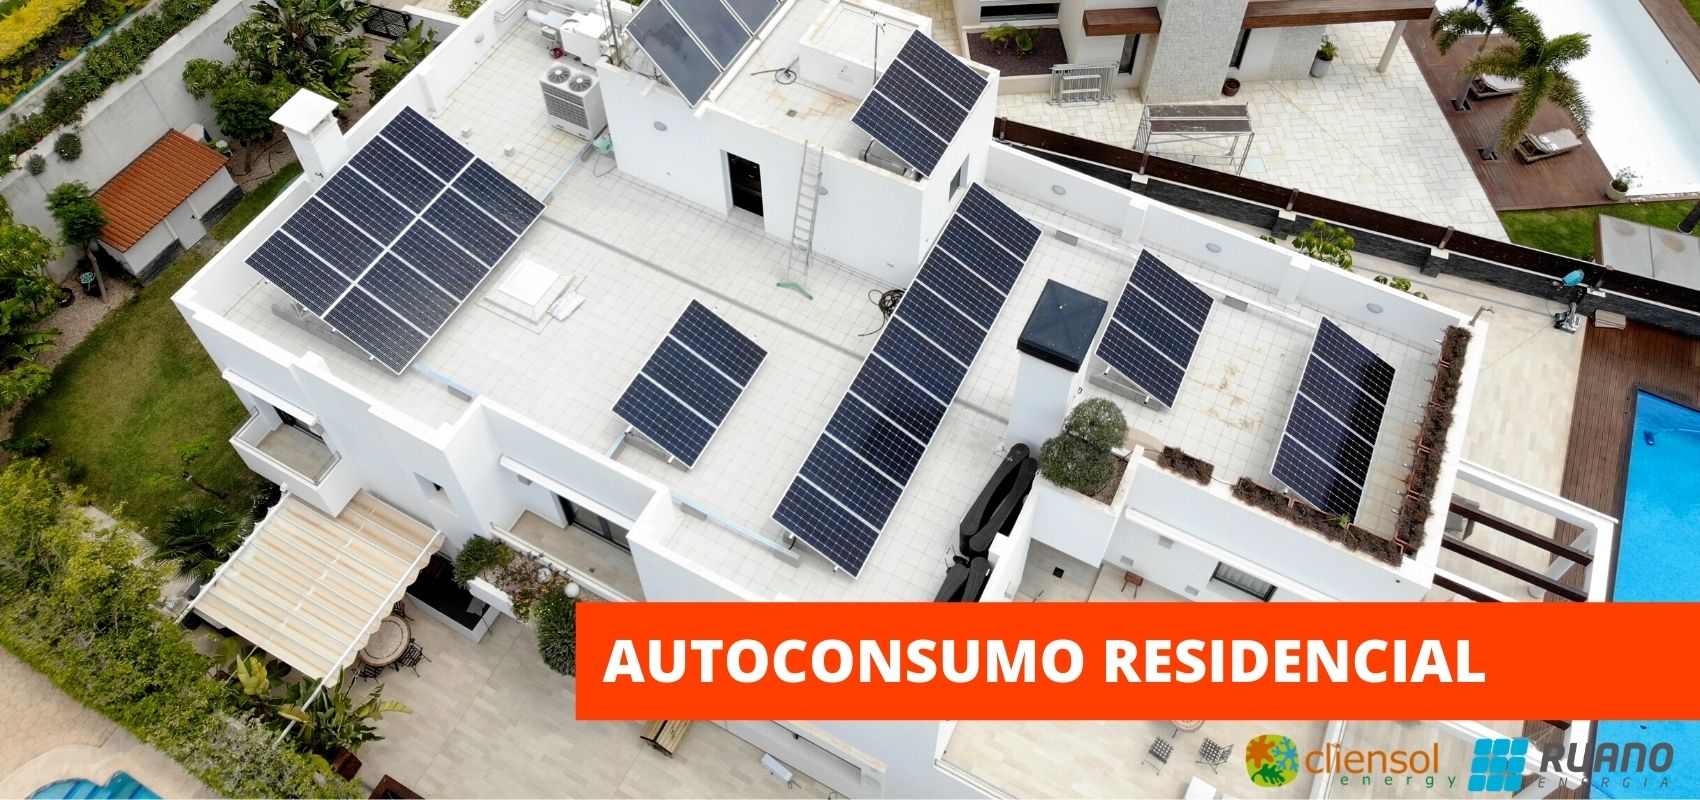 soluciones solares para el autoconsumo residencial